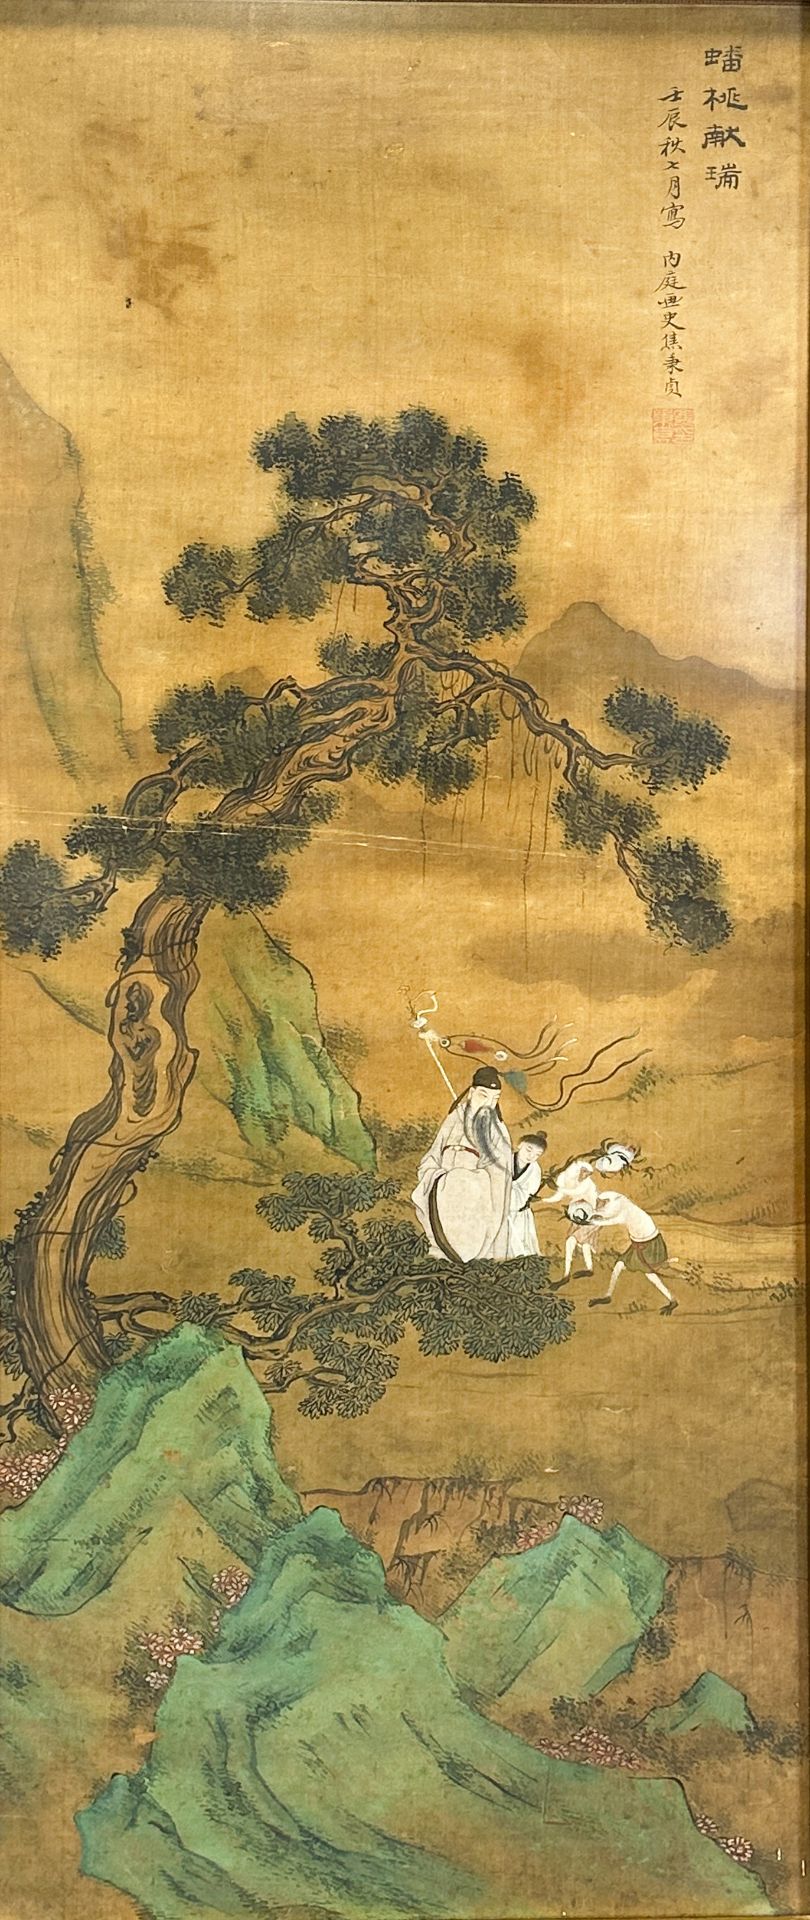 JIAO Bingzhen (1606 - 1687) zugeschrieben. Pfirsich und Glücksverheißung.